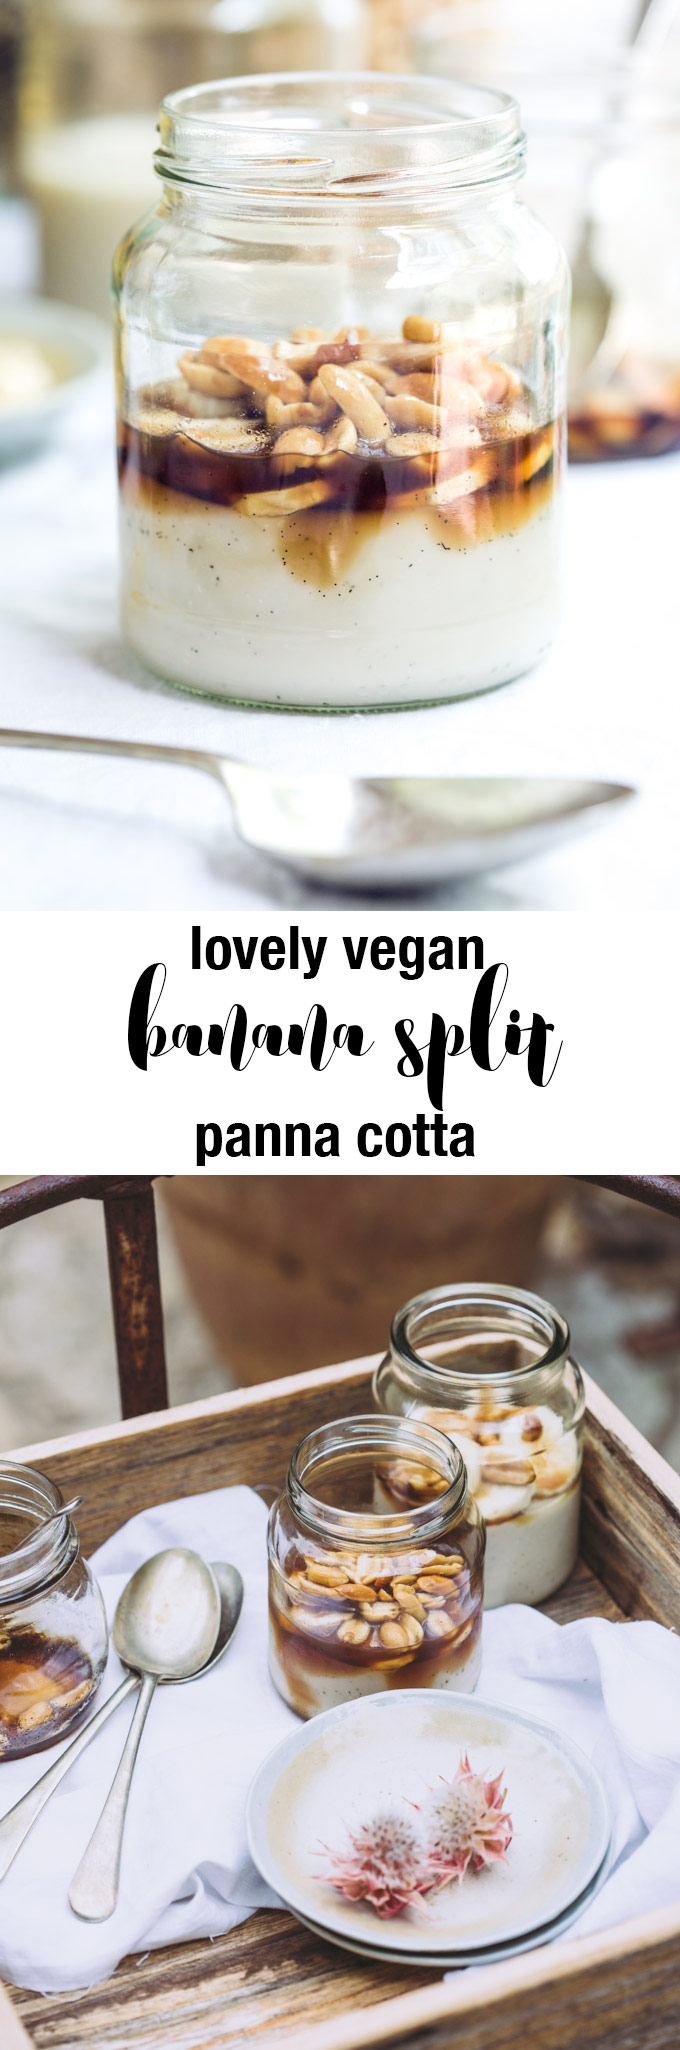 lovely-vegan-banana-split-panna-cotta-pin